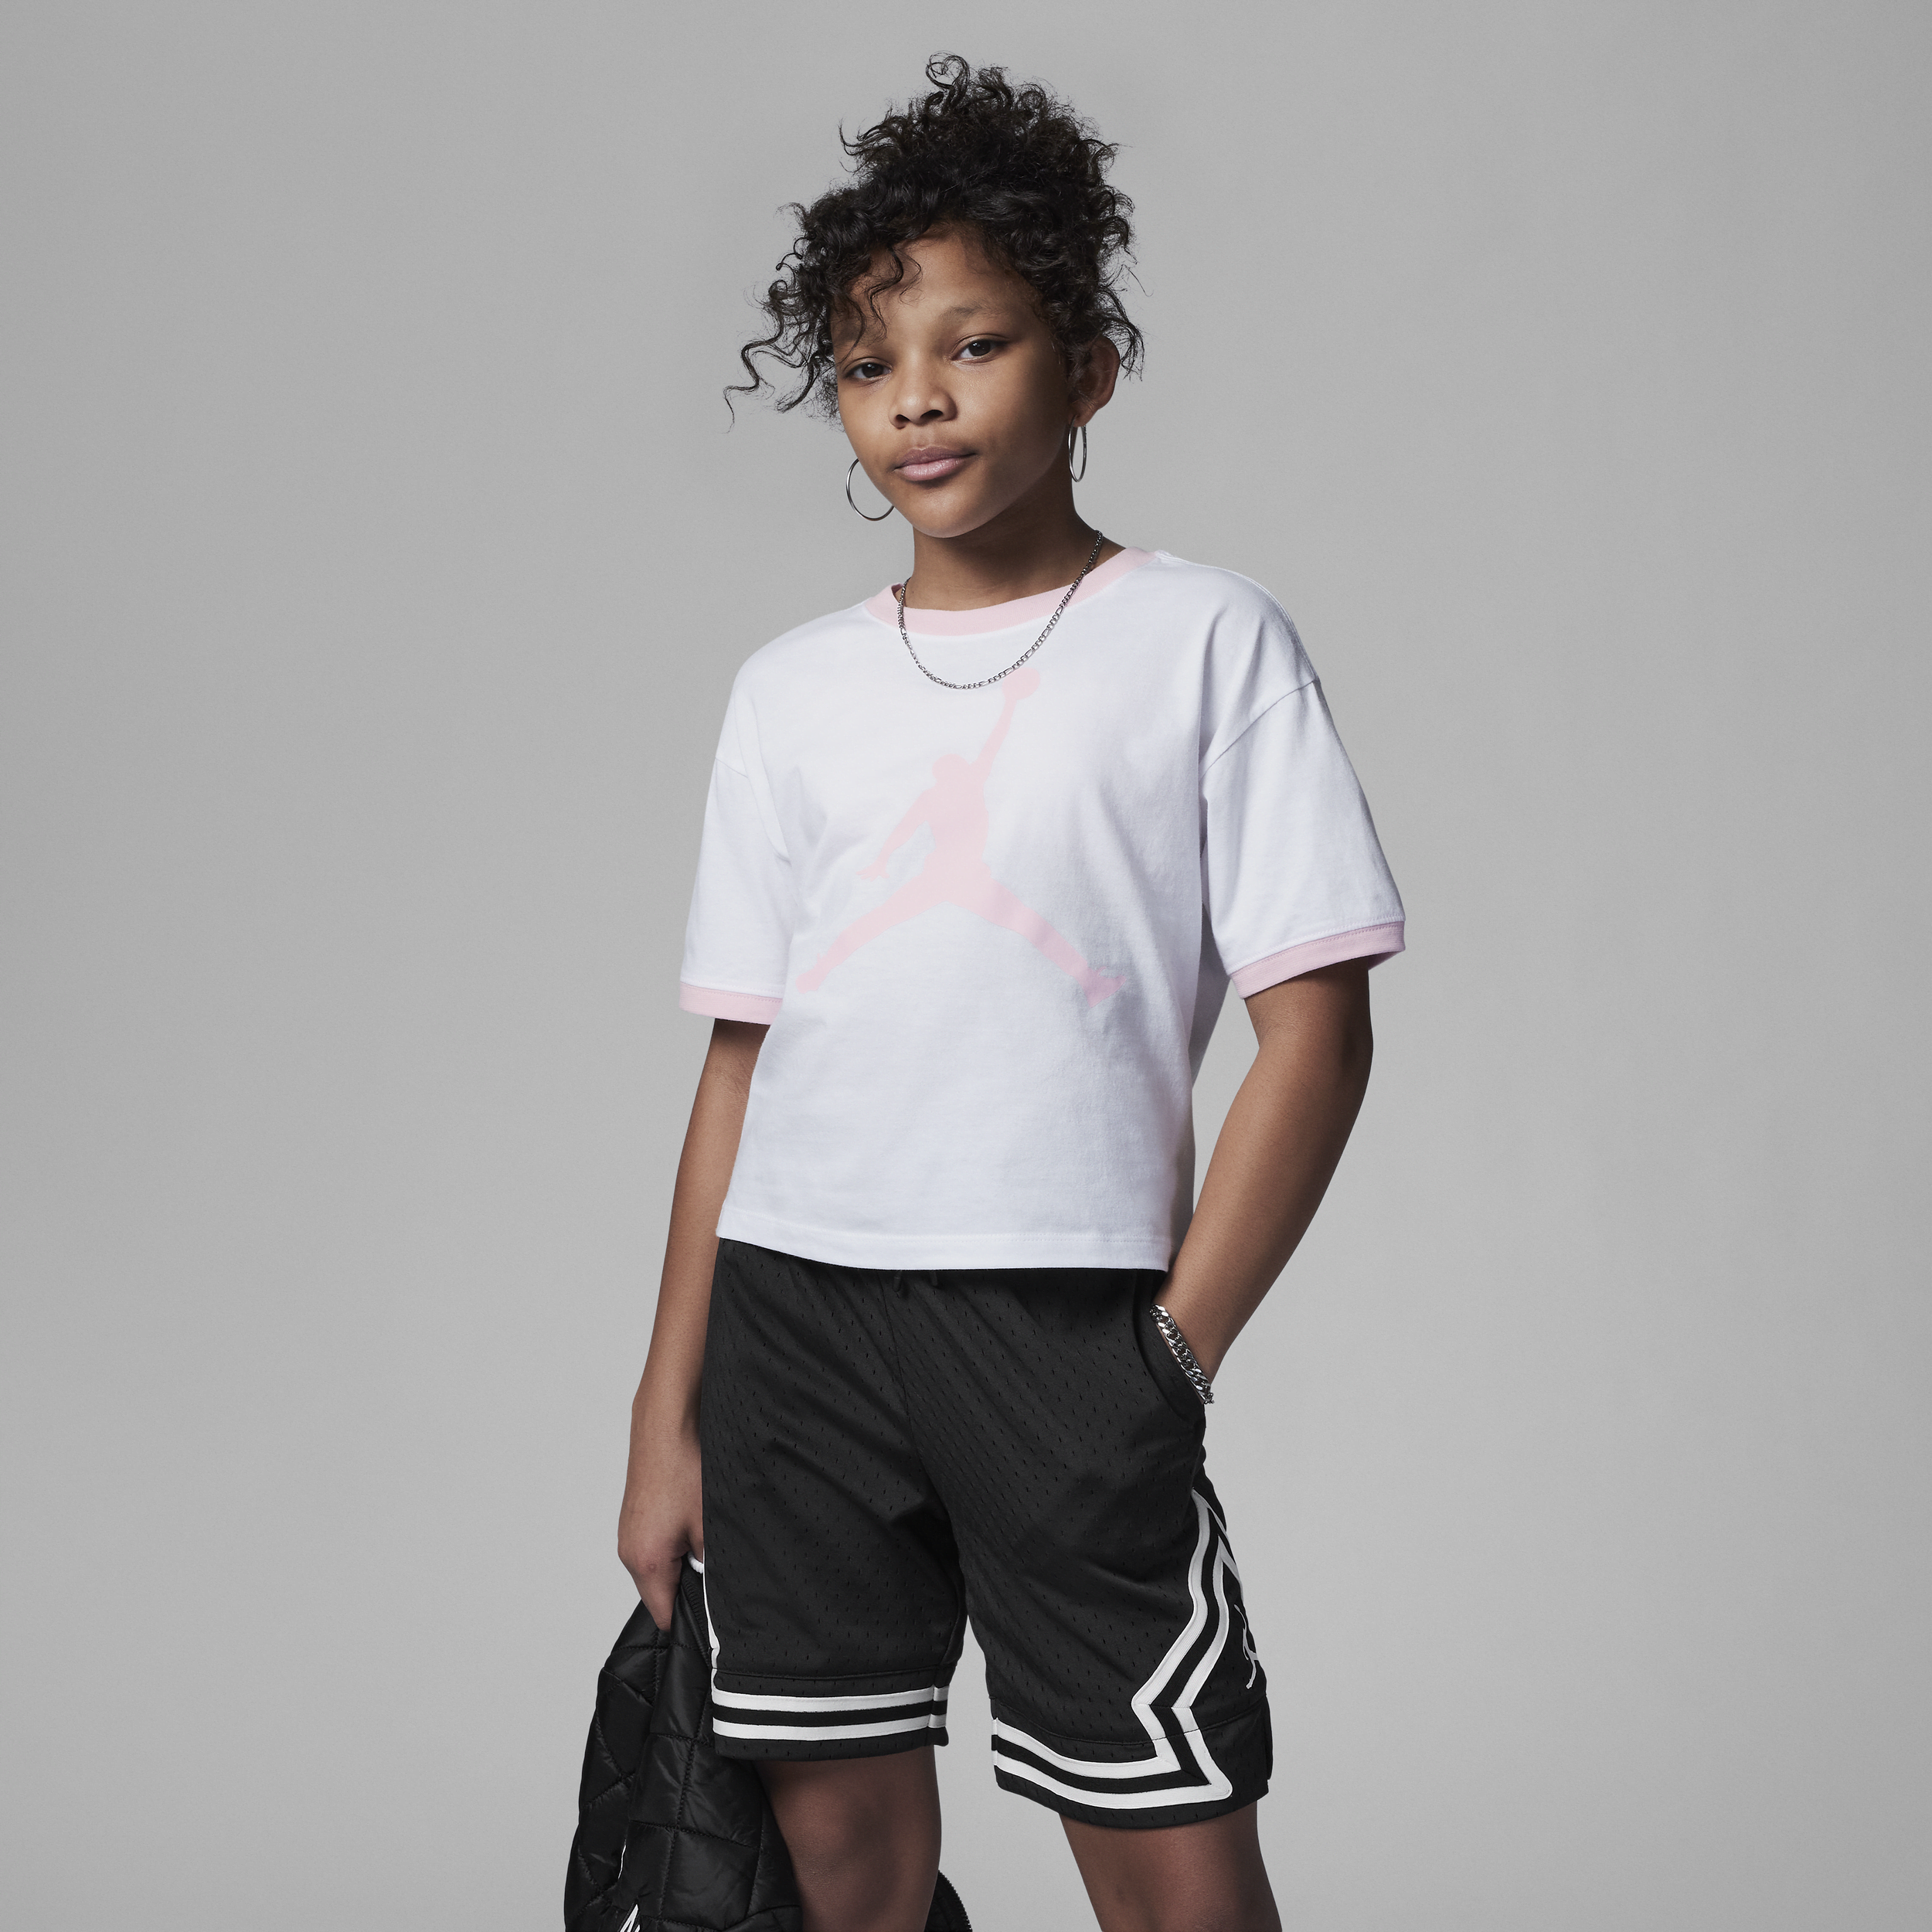 Jordan Essentials Ringer Tee Camiseta - Niño/a - Blanco